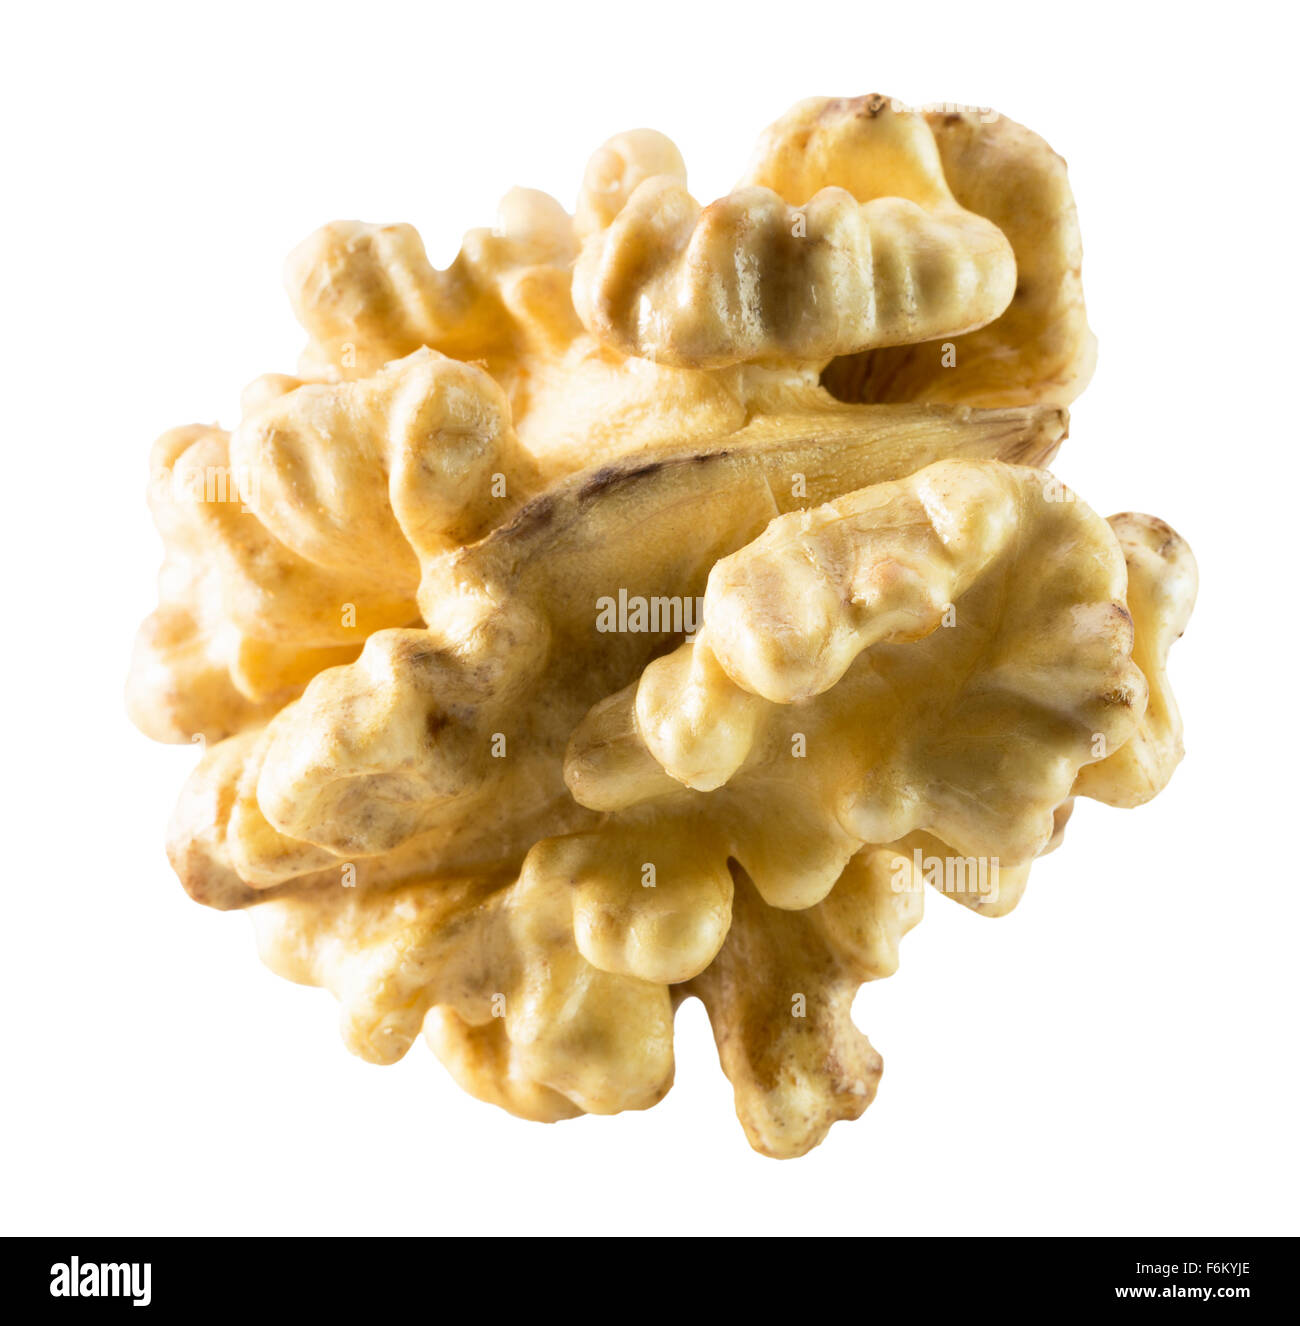 walnut nucleus isolated on the white background. Stock Photo